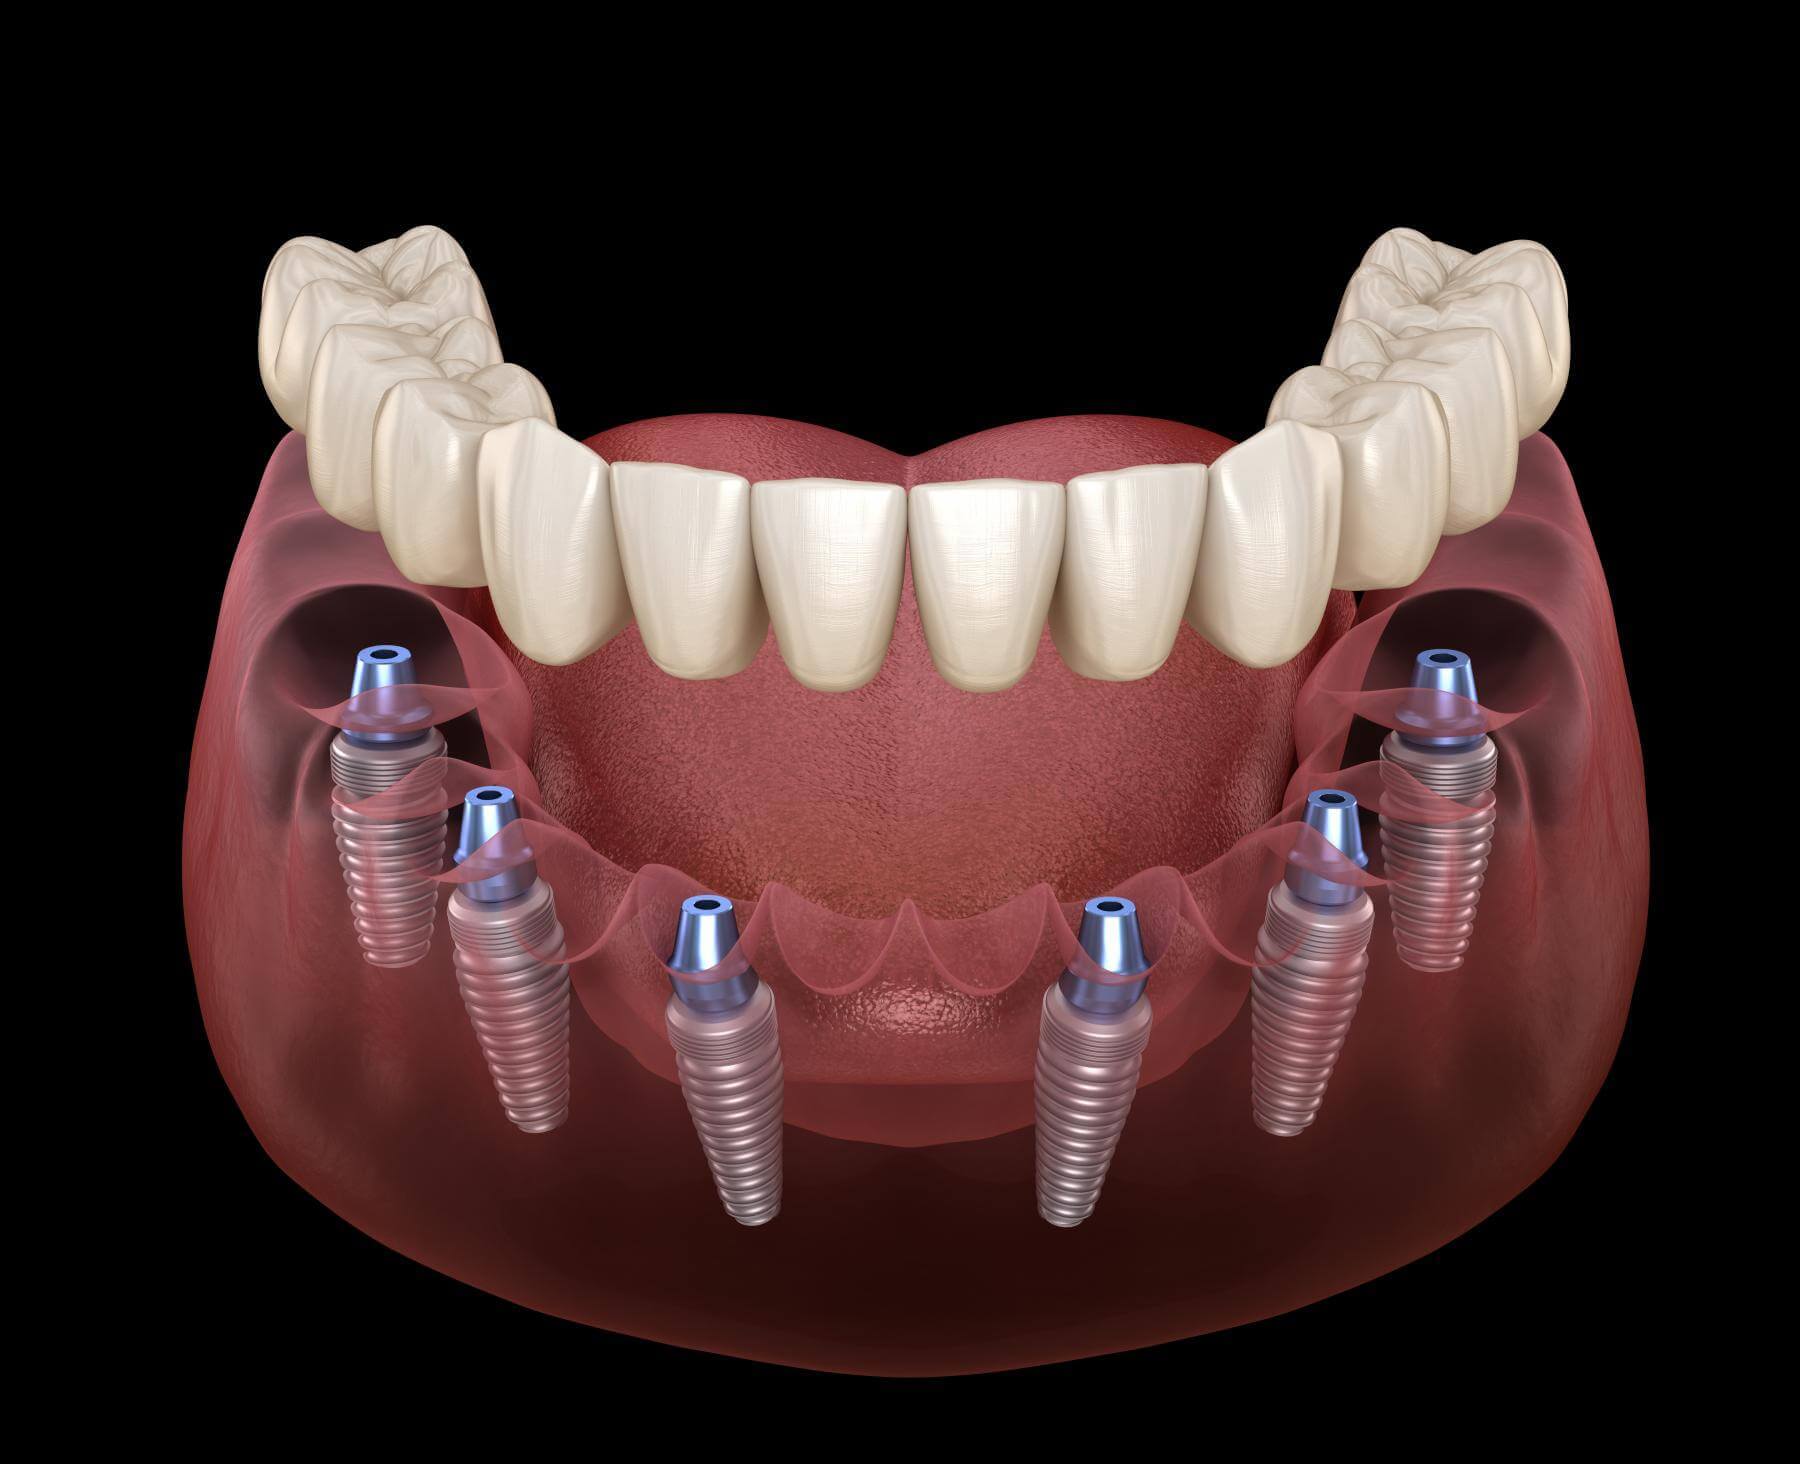 Fixed teeth on 6 implants – “All - on – 6”– JD EVOLUTION 